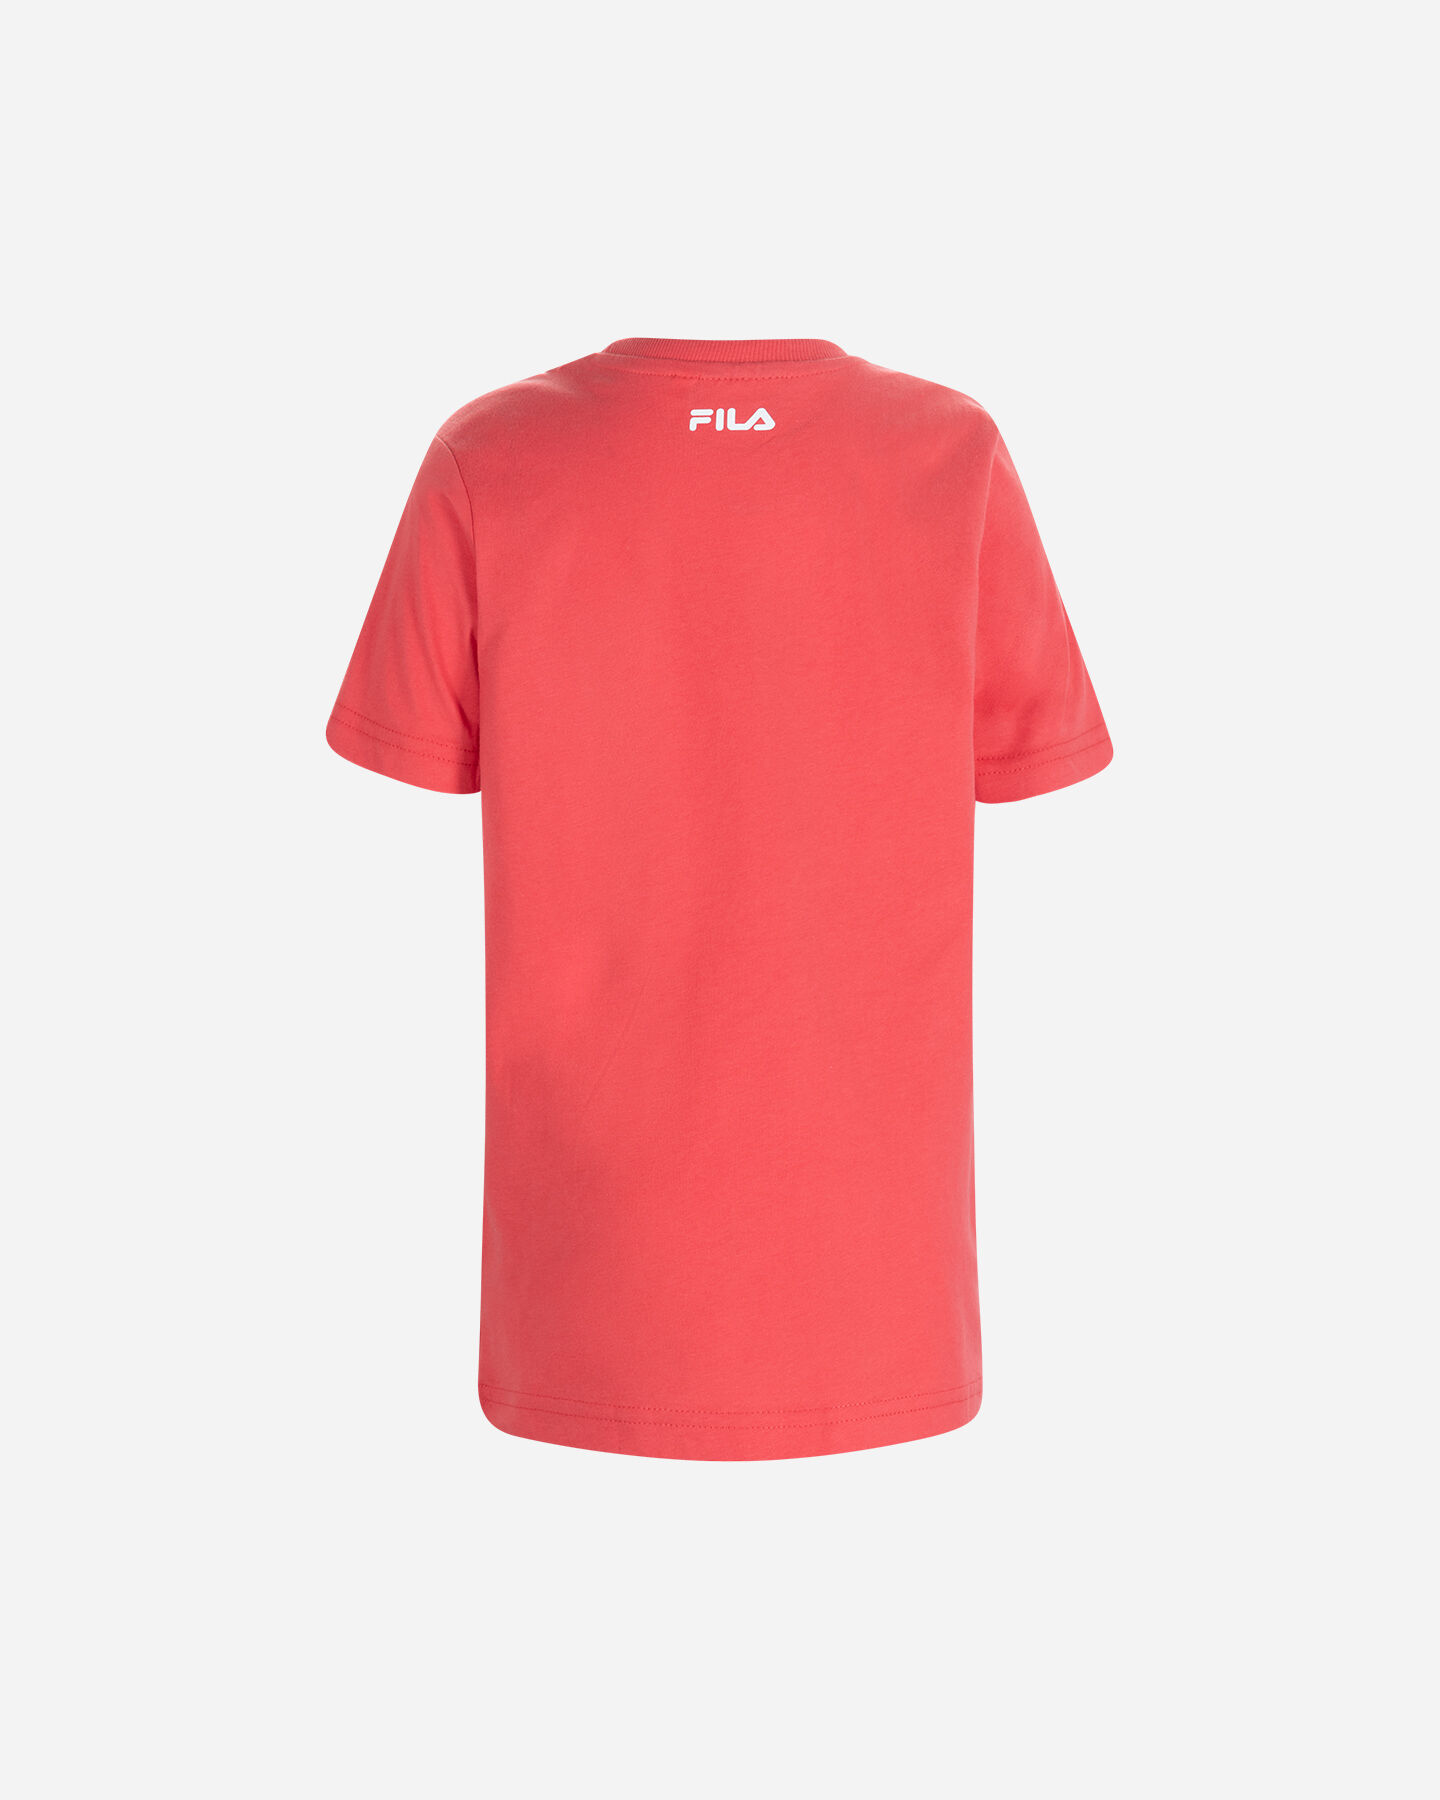  T-Shirt FILA SPRAY JR S4119118|259|6A scatto 1